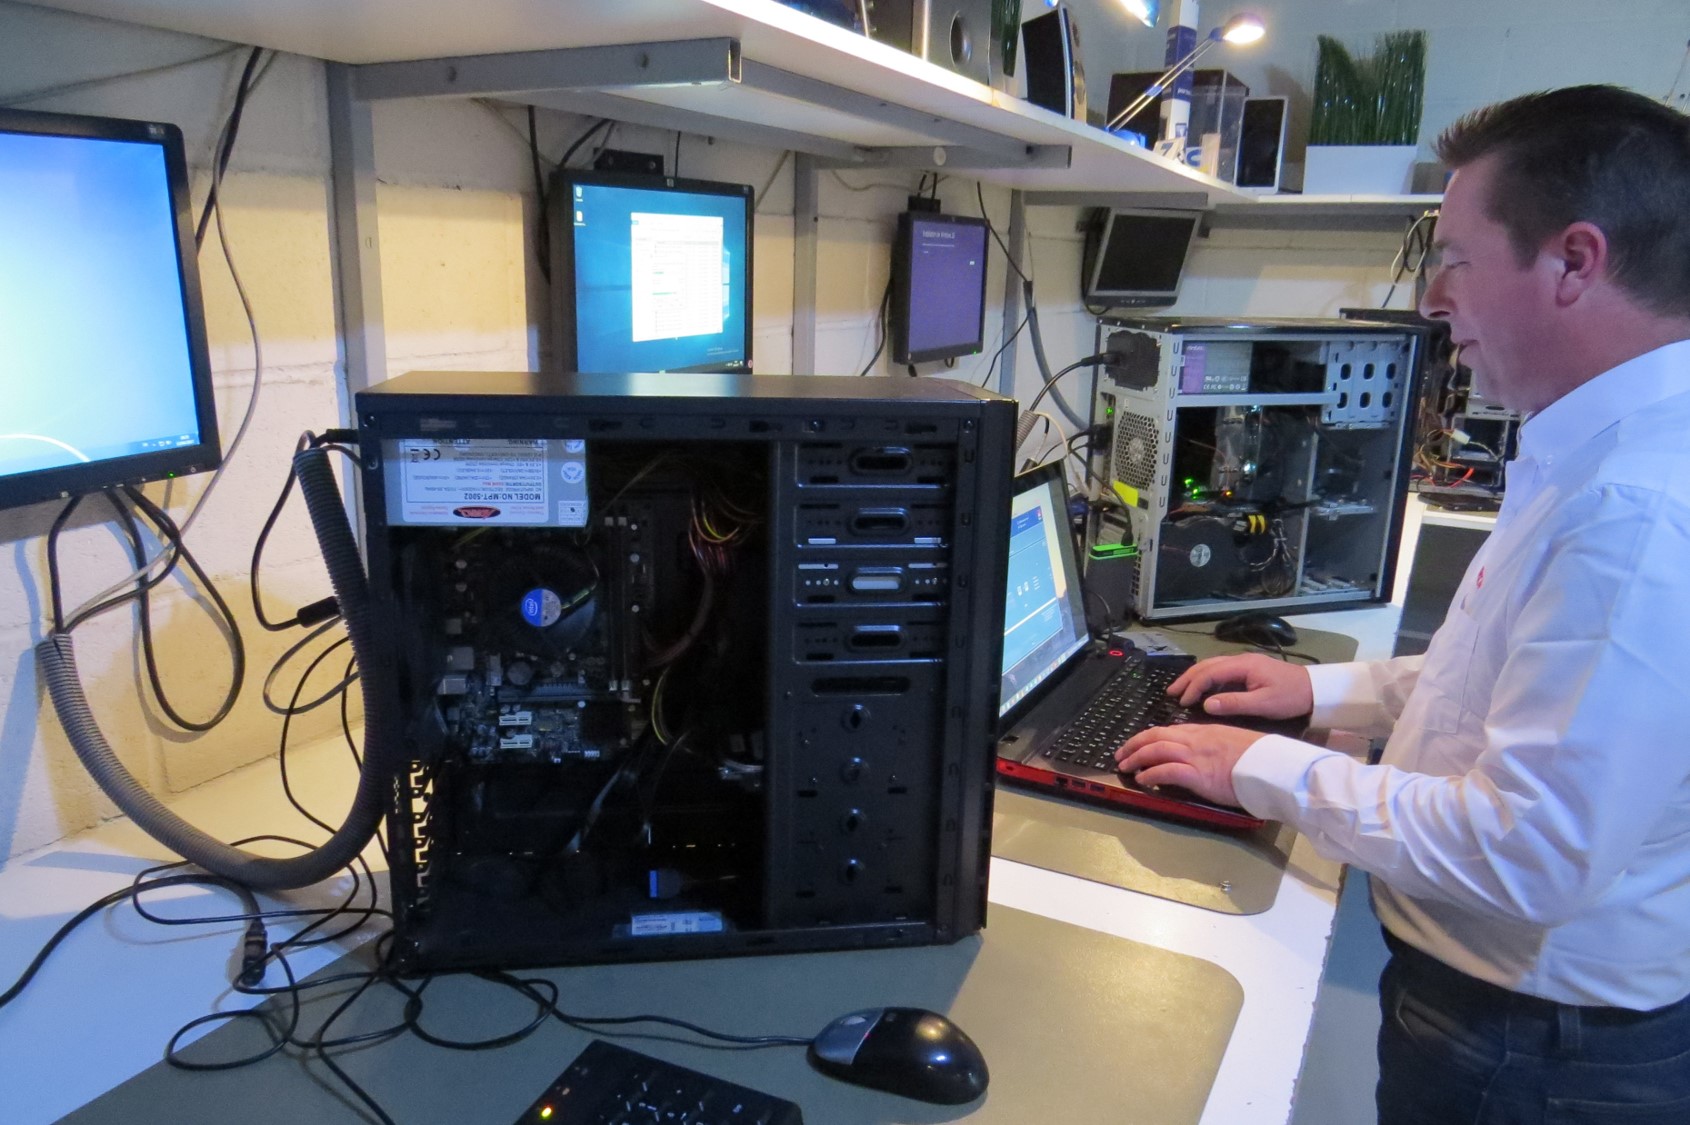 Informaticien en train de réparer une panne informatique 95 dans un atelier technique